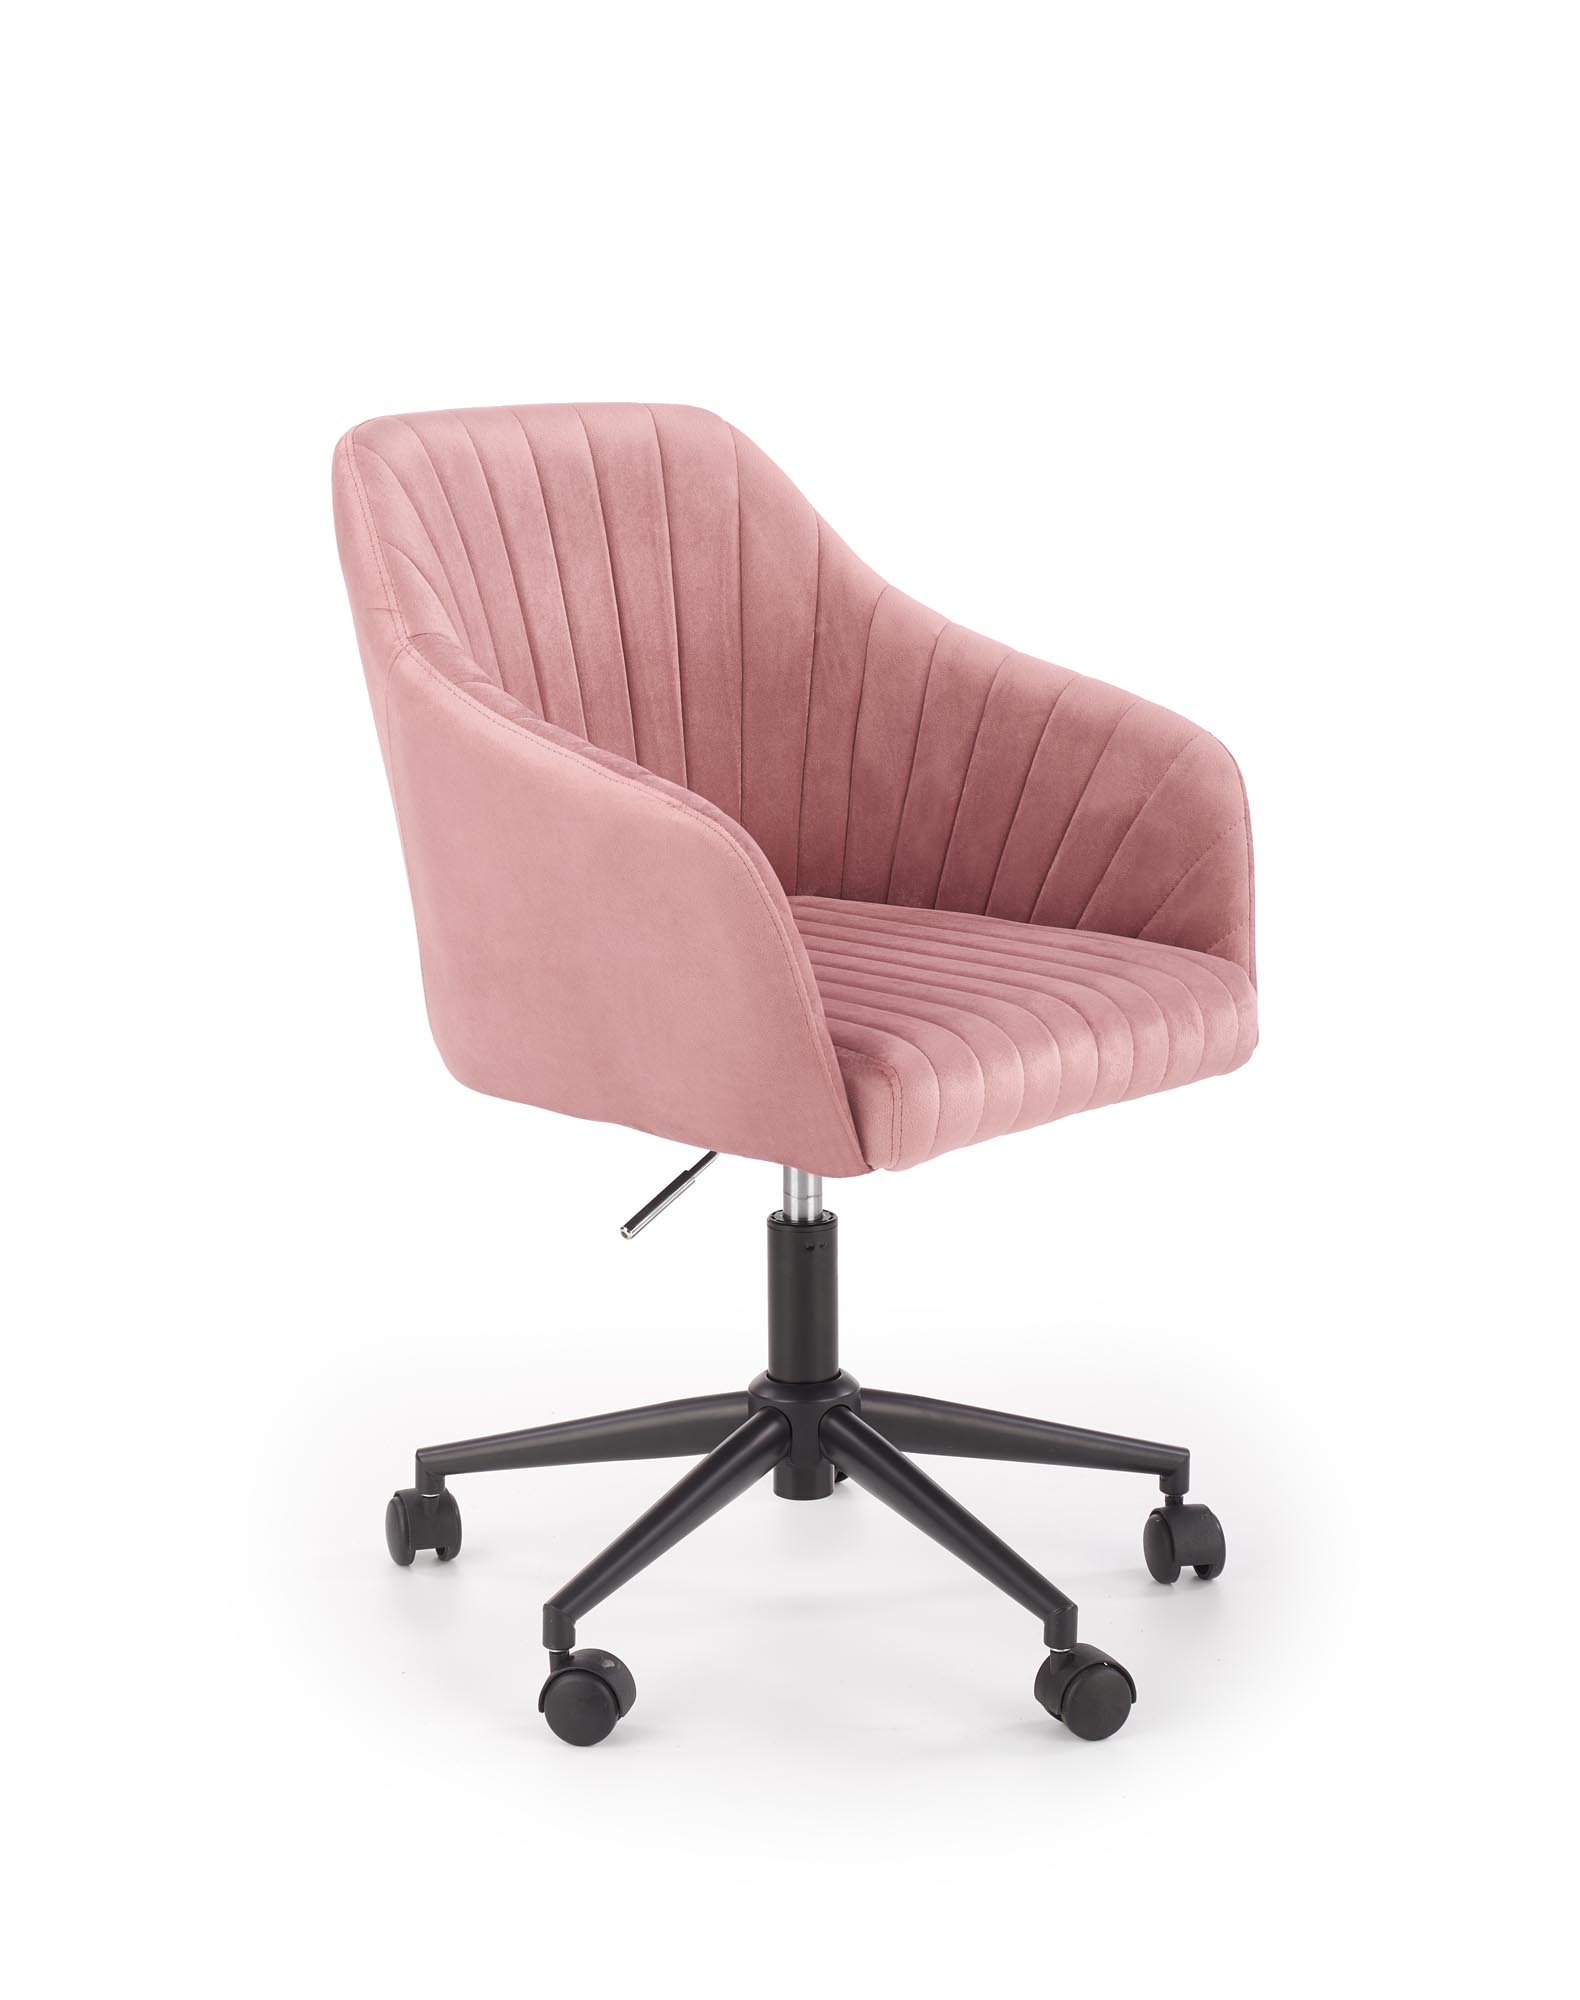 Rózsaszín irodai szék maribo velvet